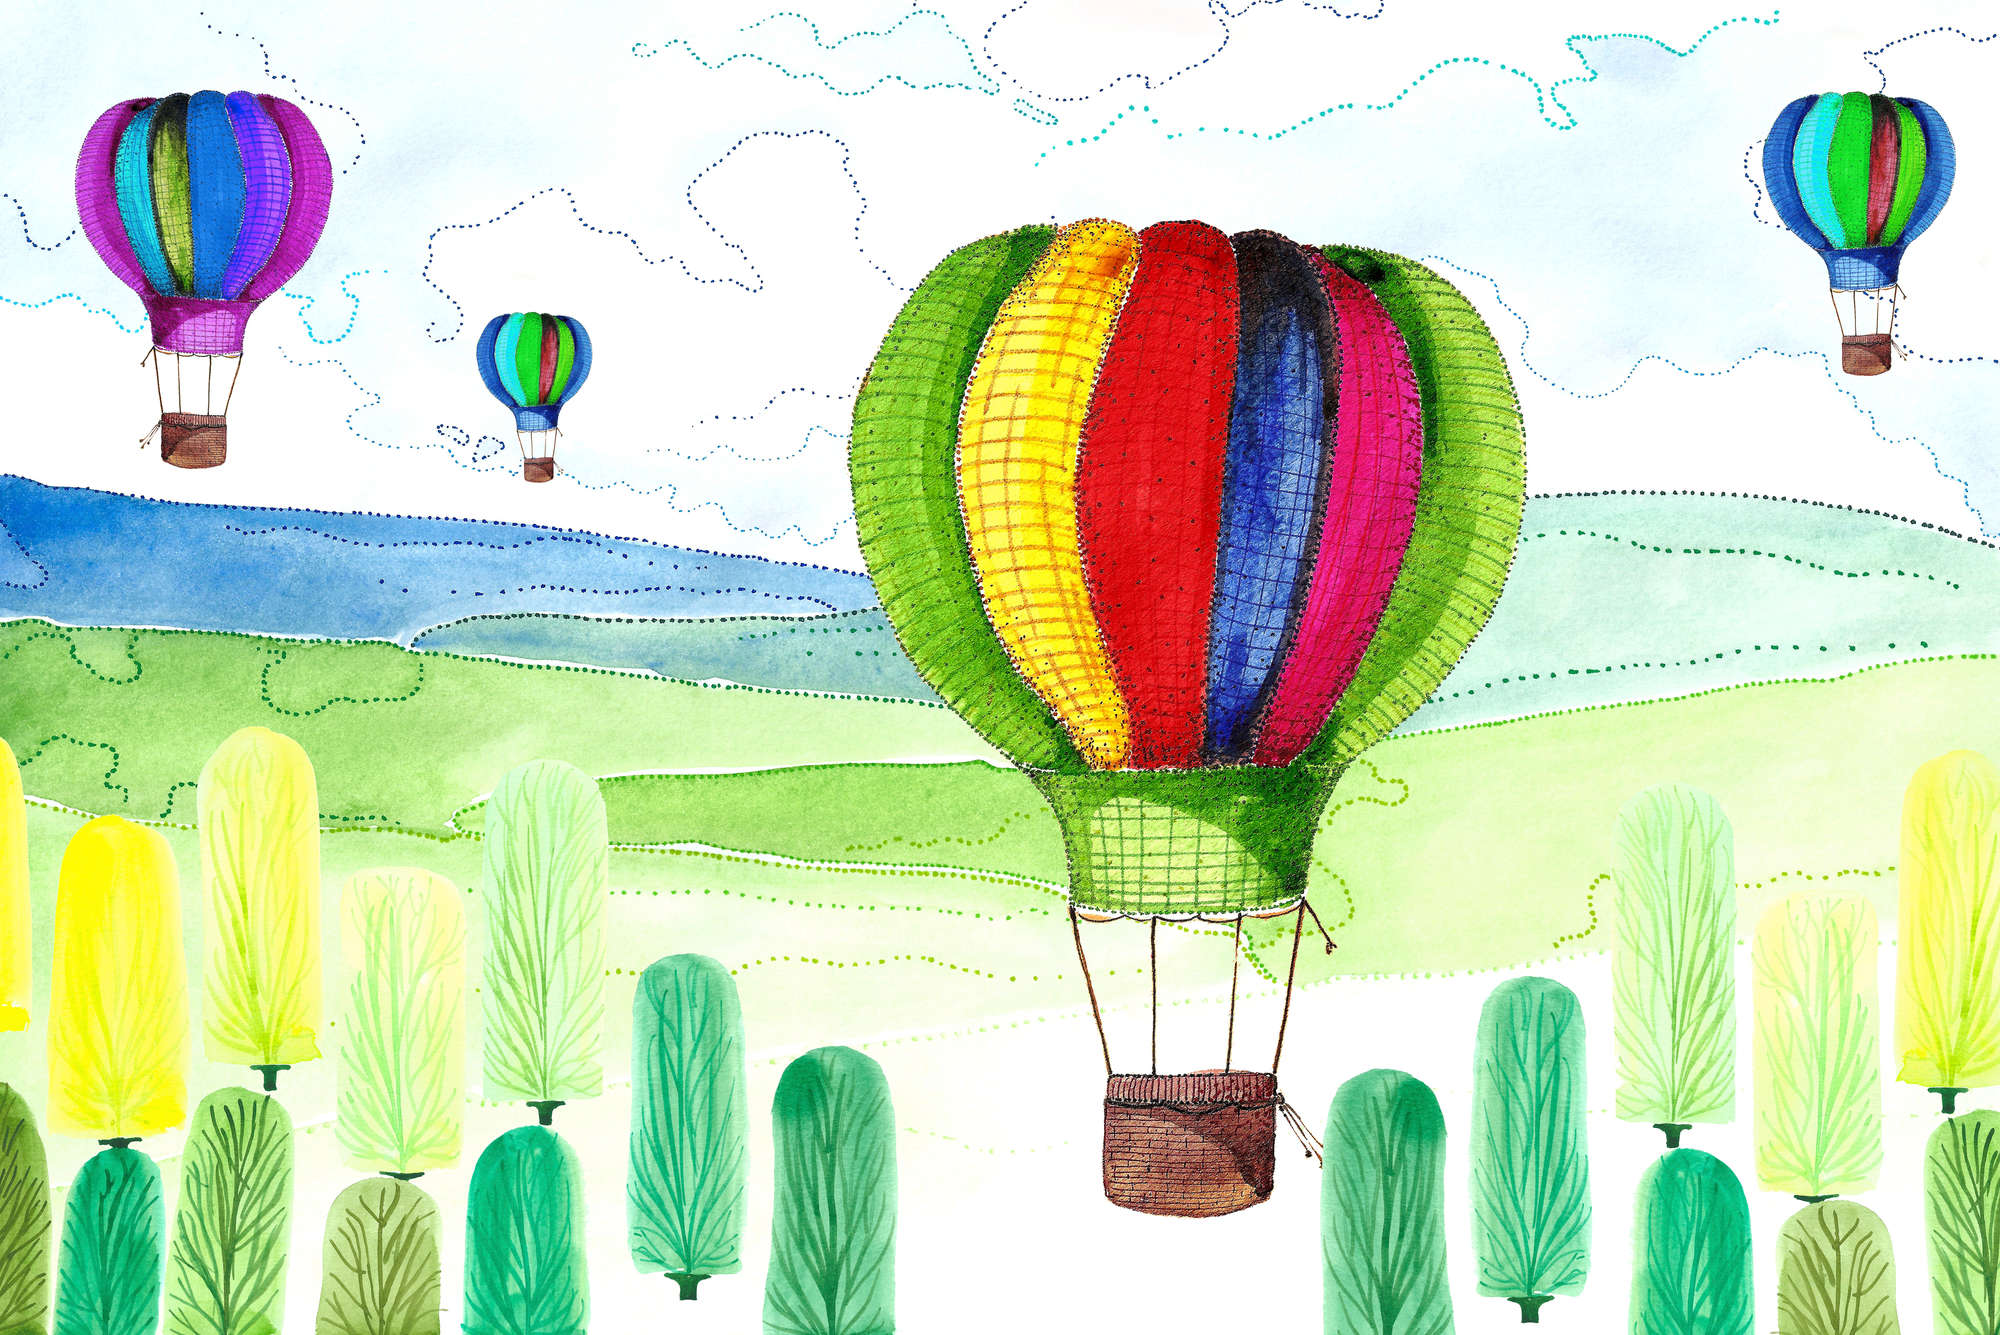             Kinderbehang Ballon en Bos tekeningen op Textuur Fleece
        